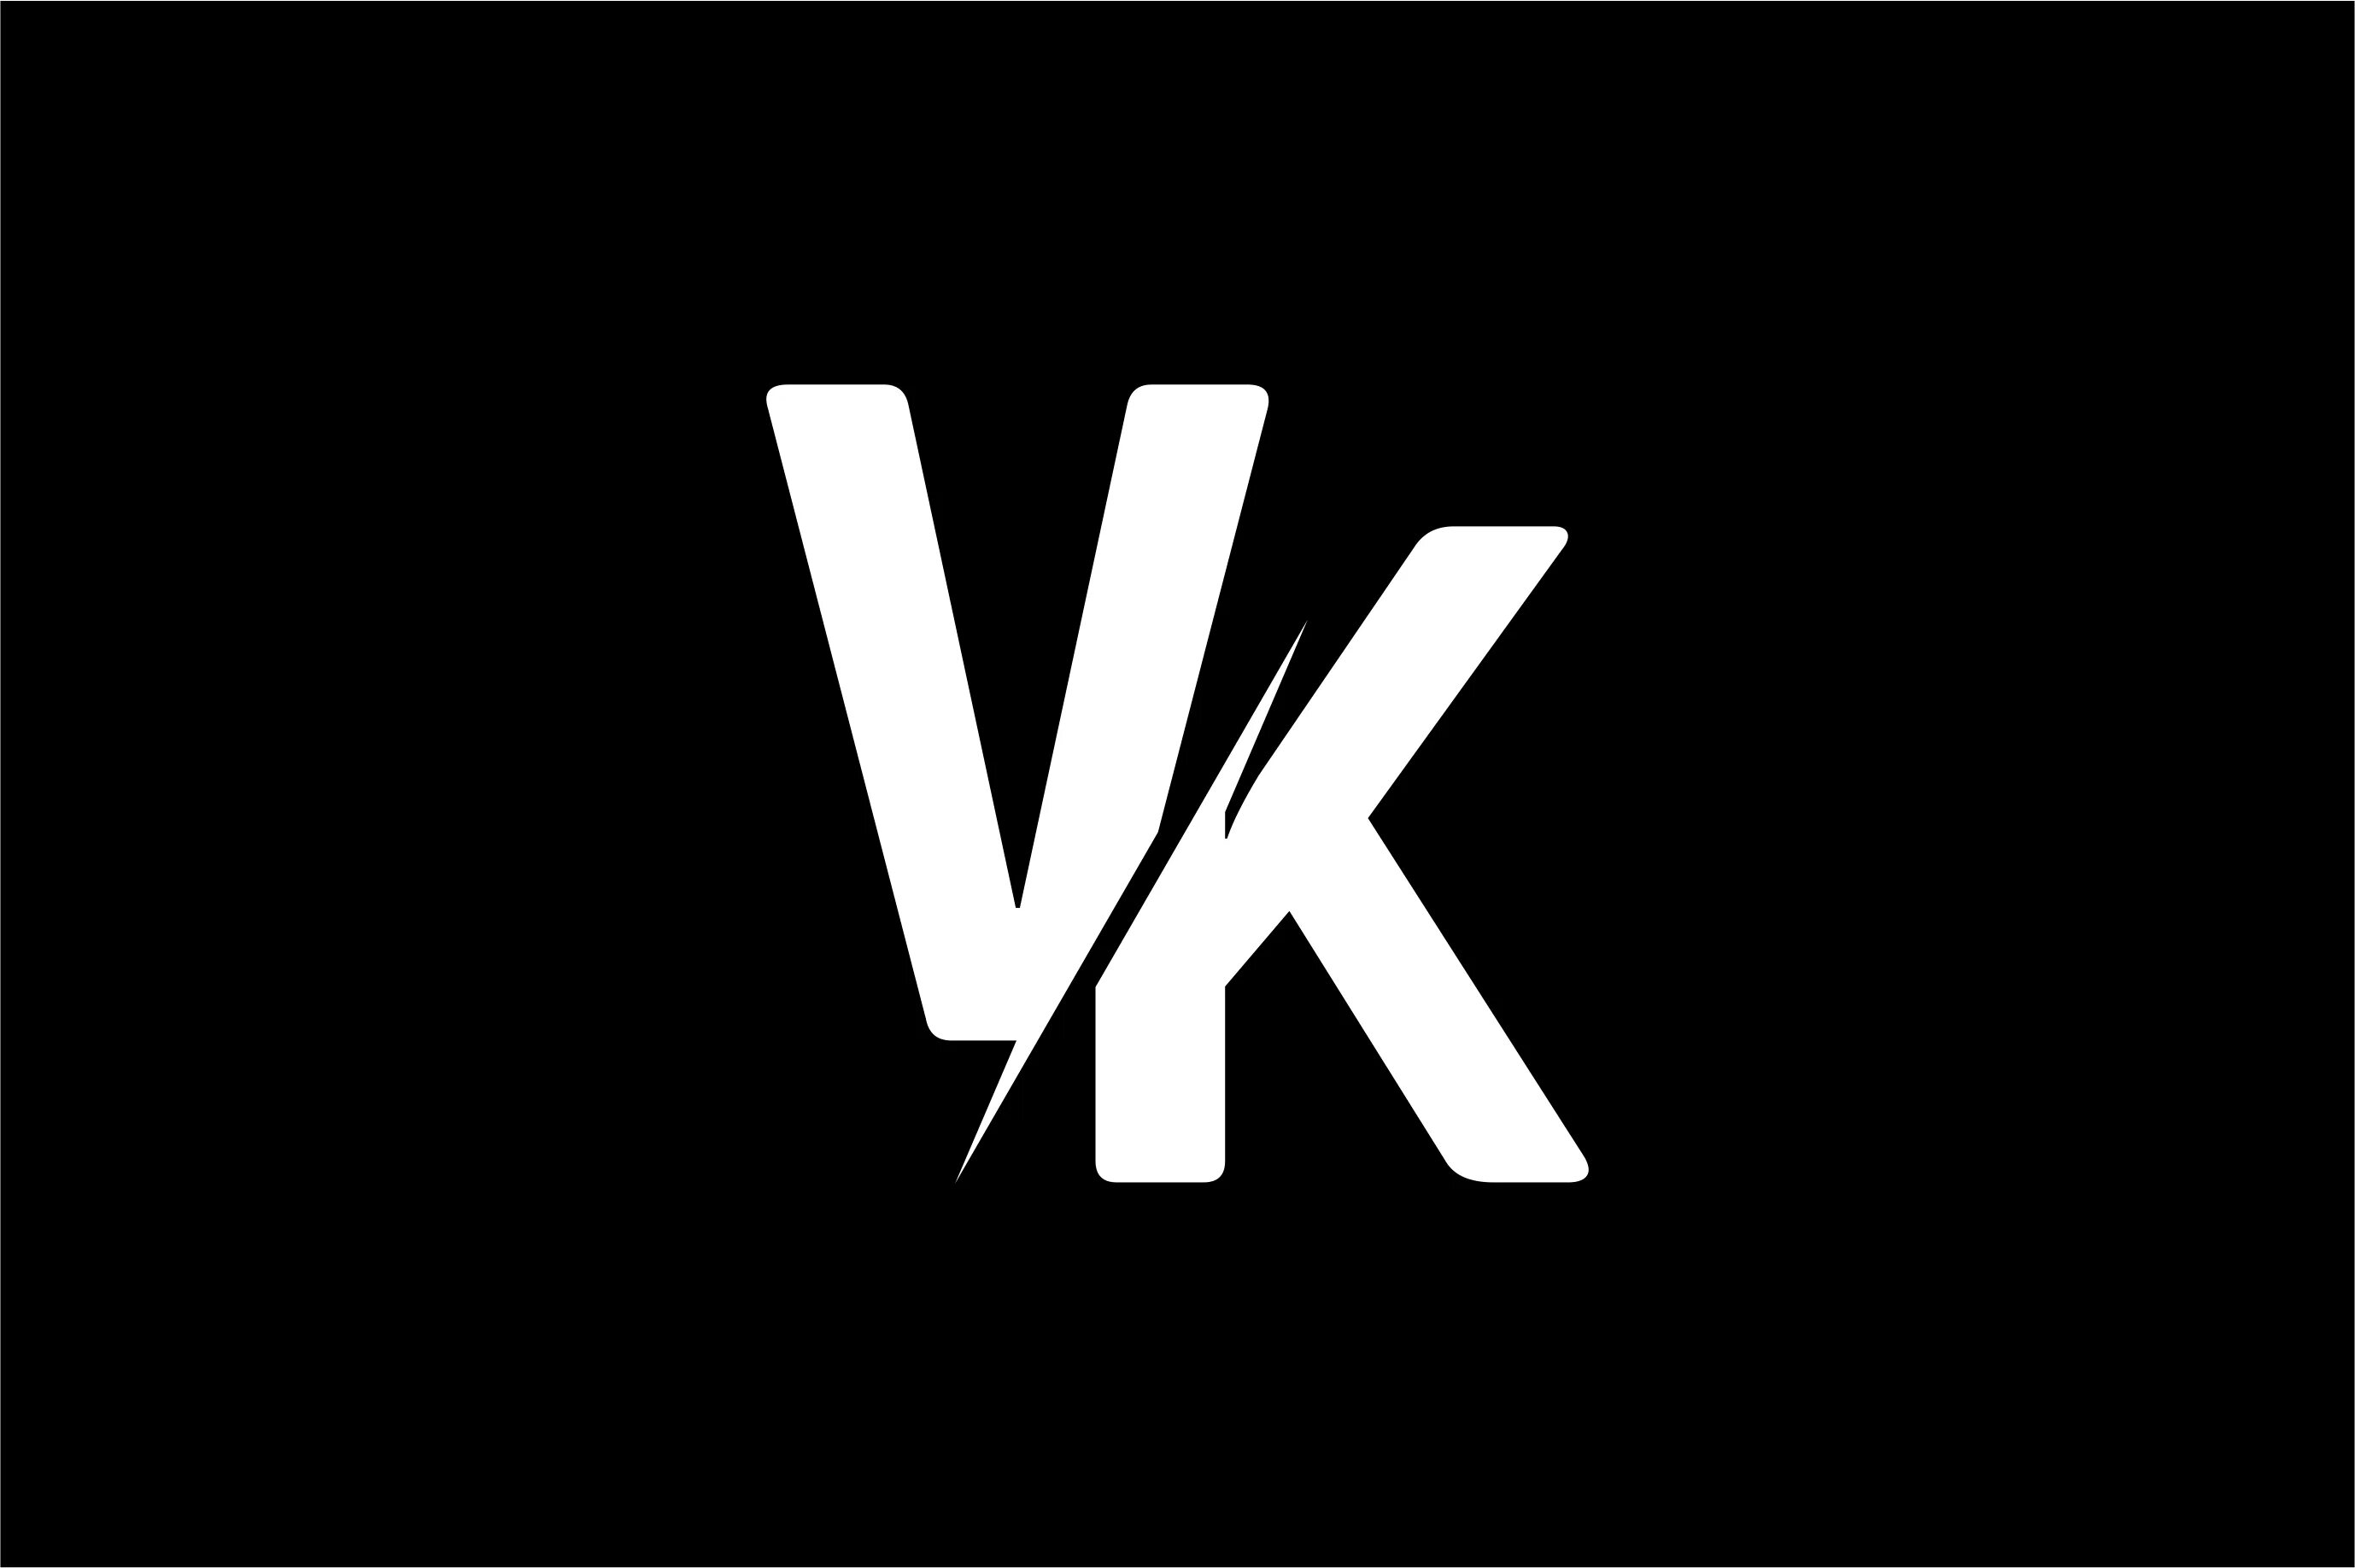 ВКОНТАКТЕ логотип. Черный фон для ВК. Эмблема ВК на черном фоне. Логотип v k на черном фоне.